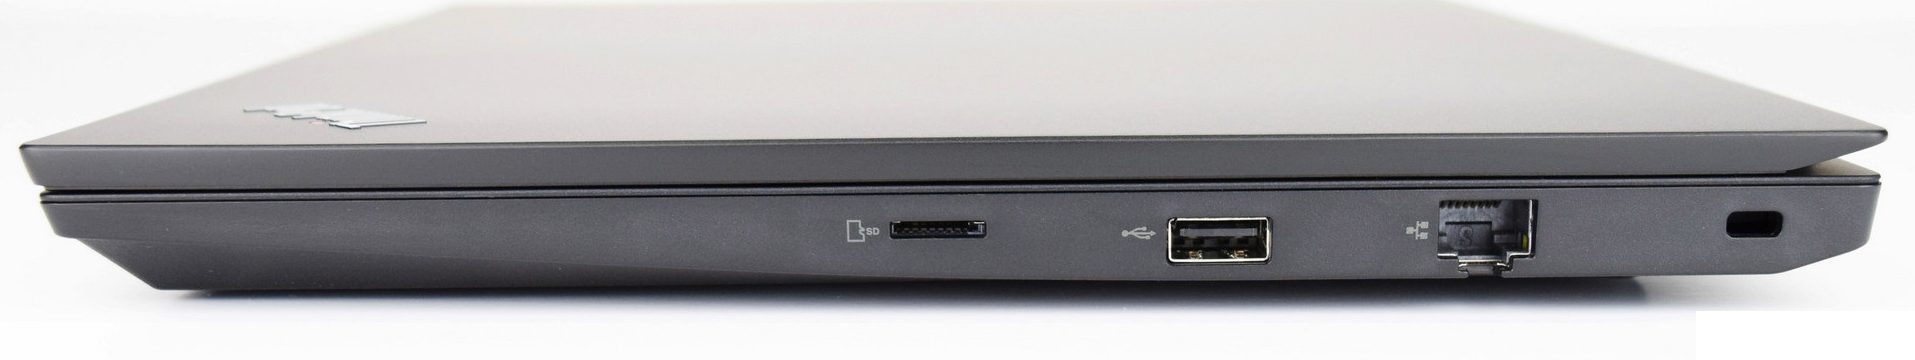 Đánh giá laptop Lenovo Thinkpad E480: Laptop văn phòng giá rẻ, Chuyên trang tư vấn laptop